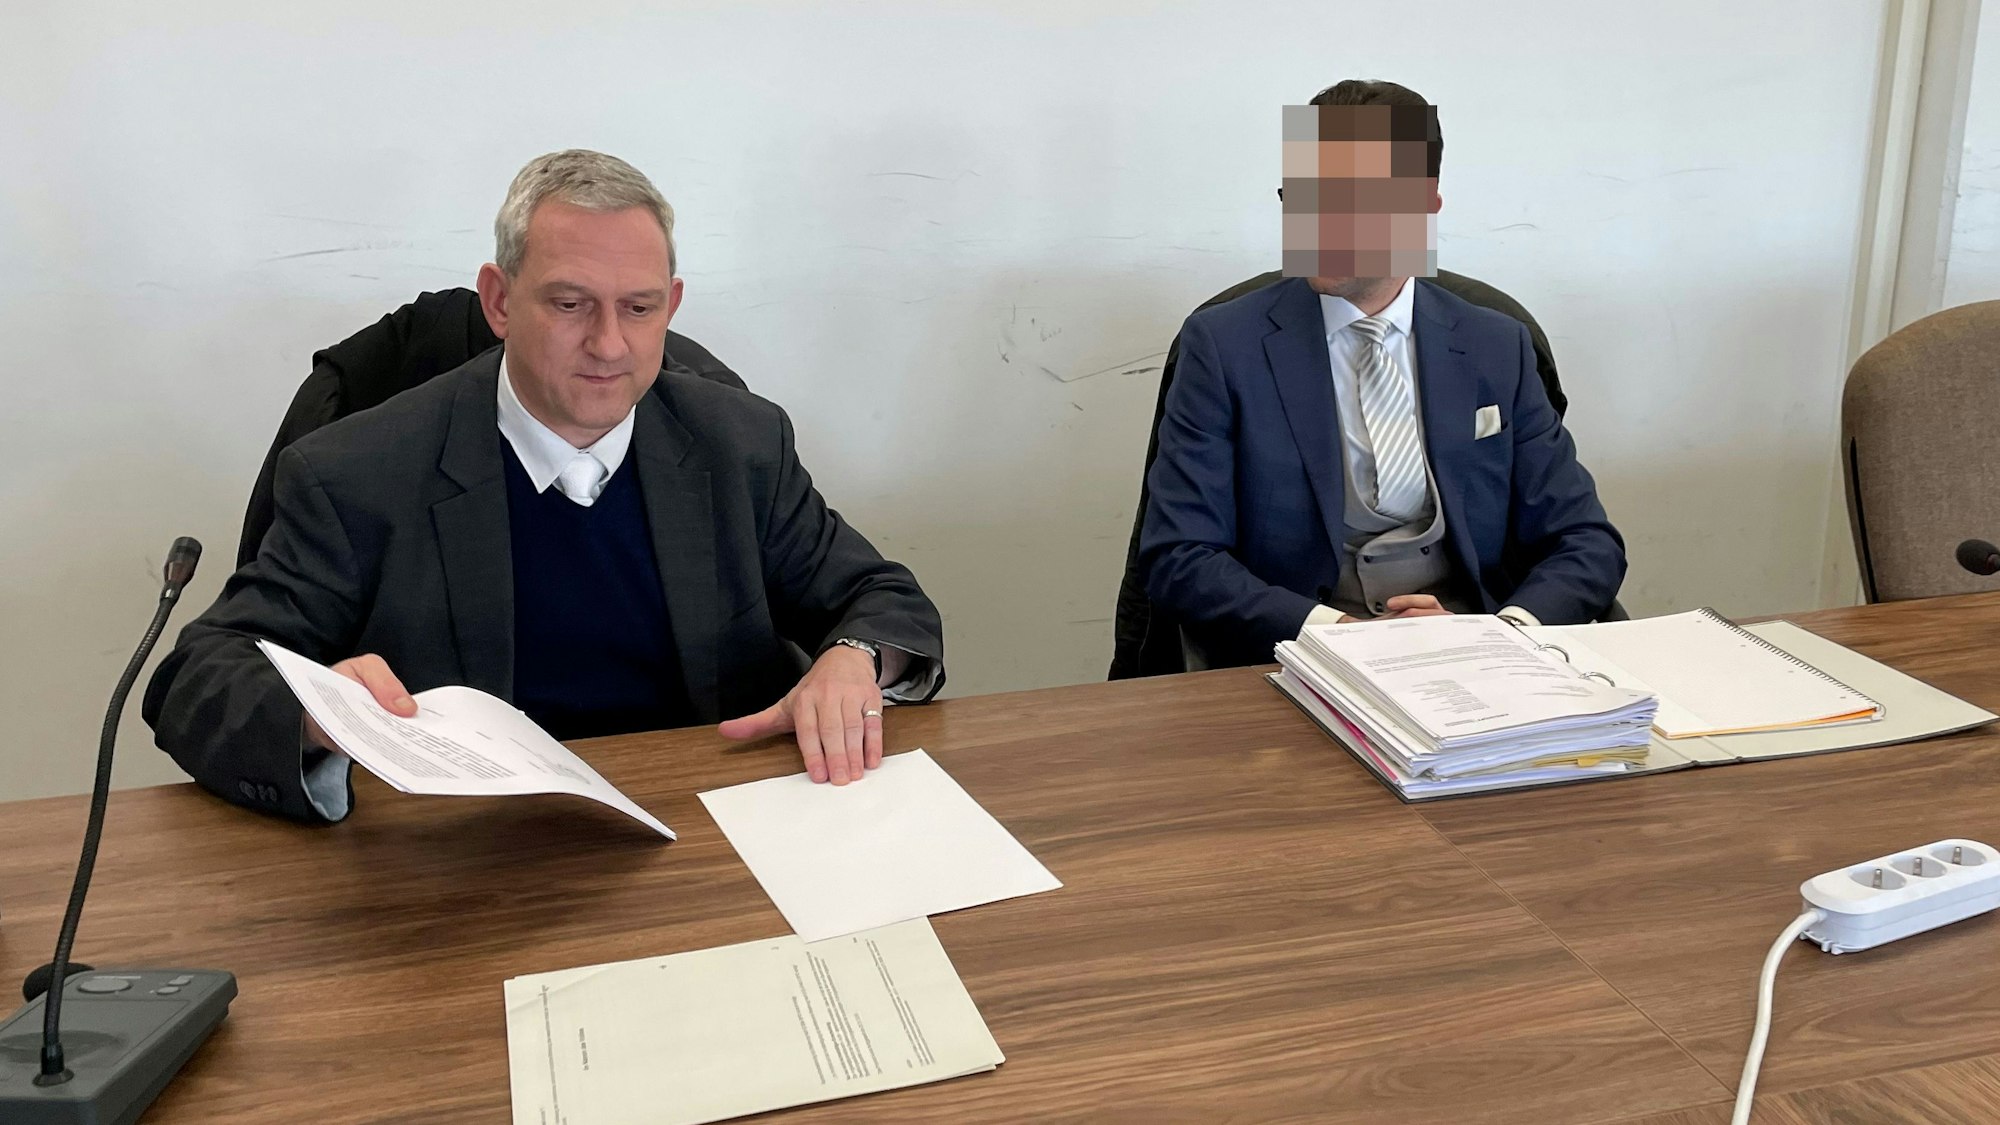 Der beschuldigte AfD-Politiker (r.) mit seinem Verteidiger im Landgericht Köln.